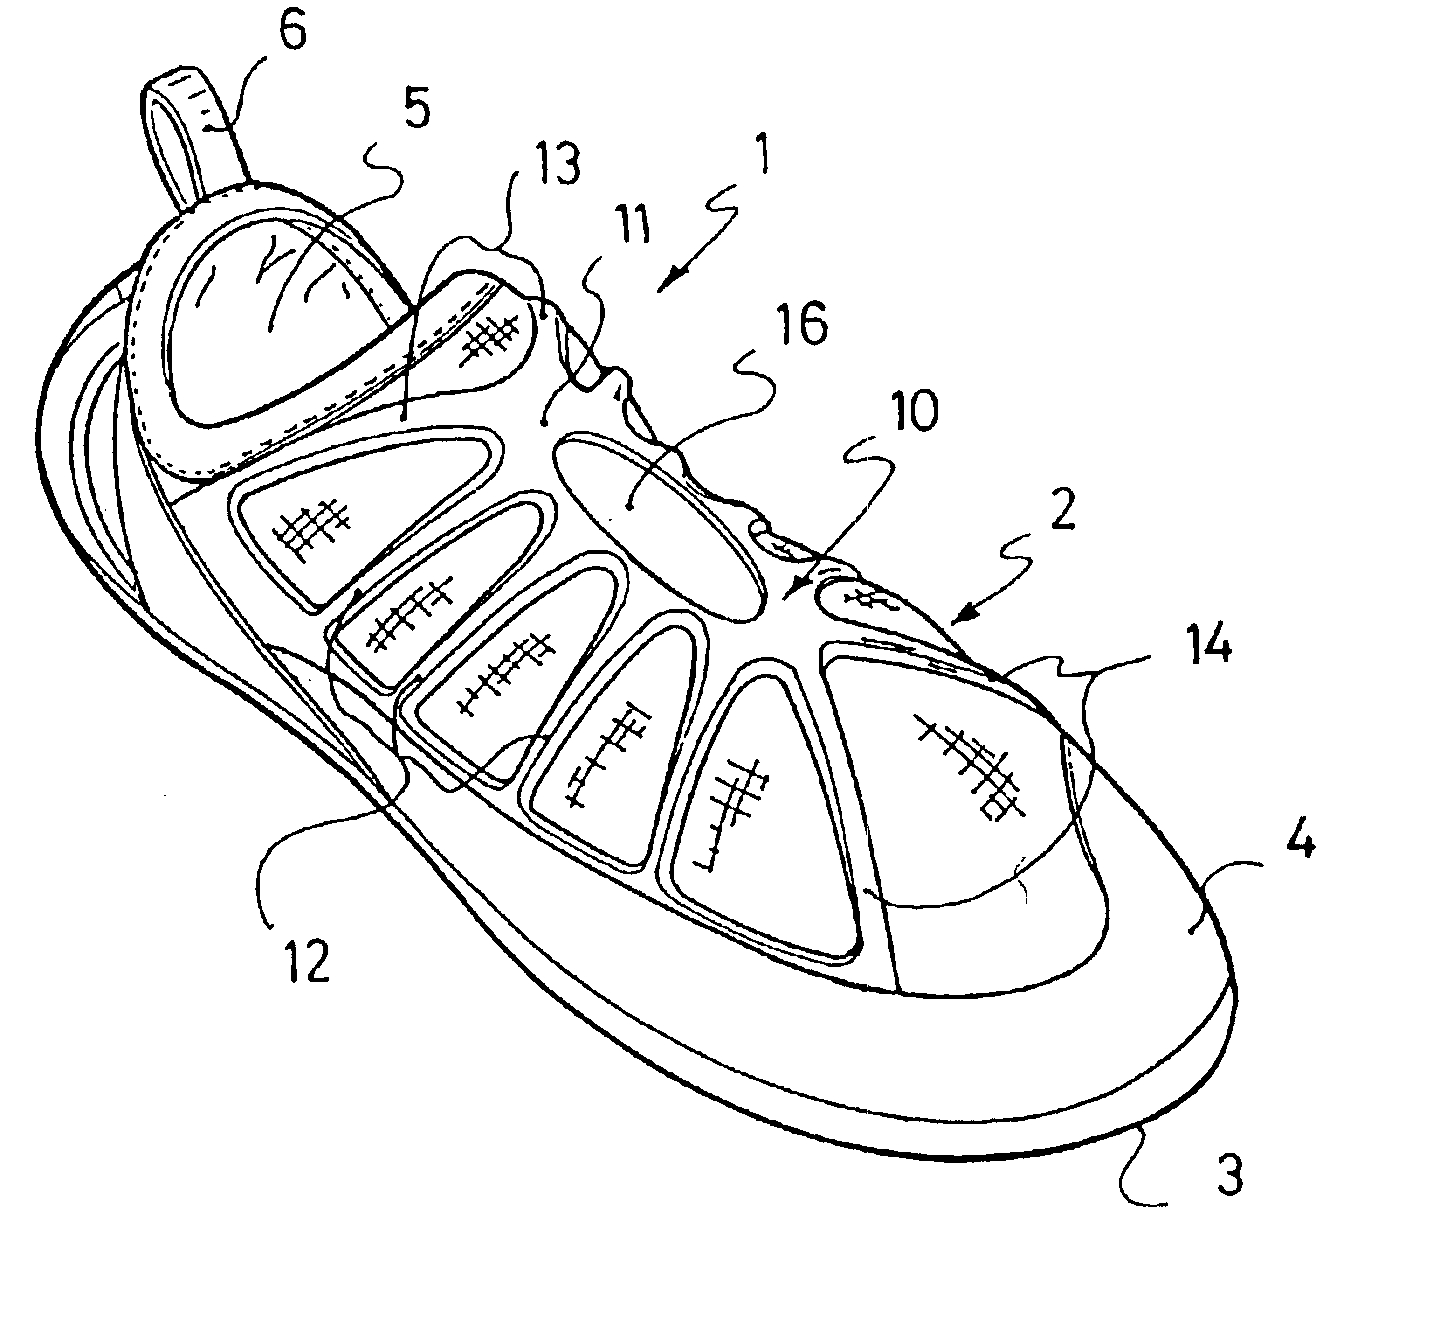 Footwear article having an elastic tightening